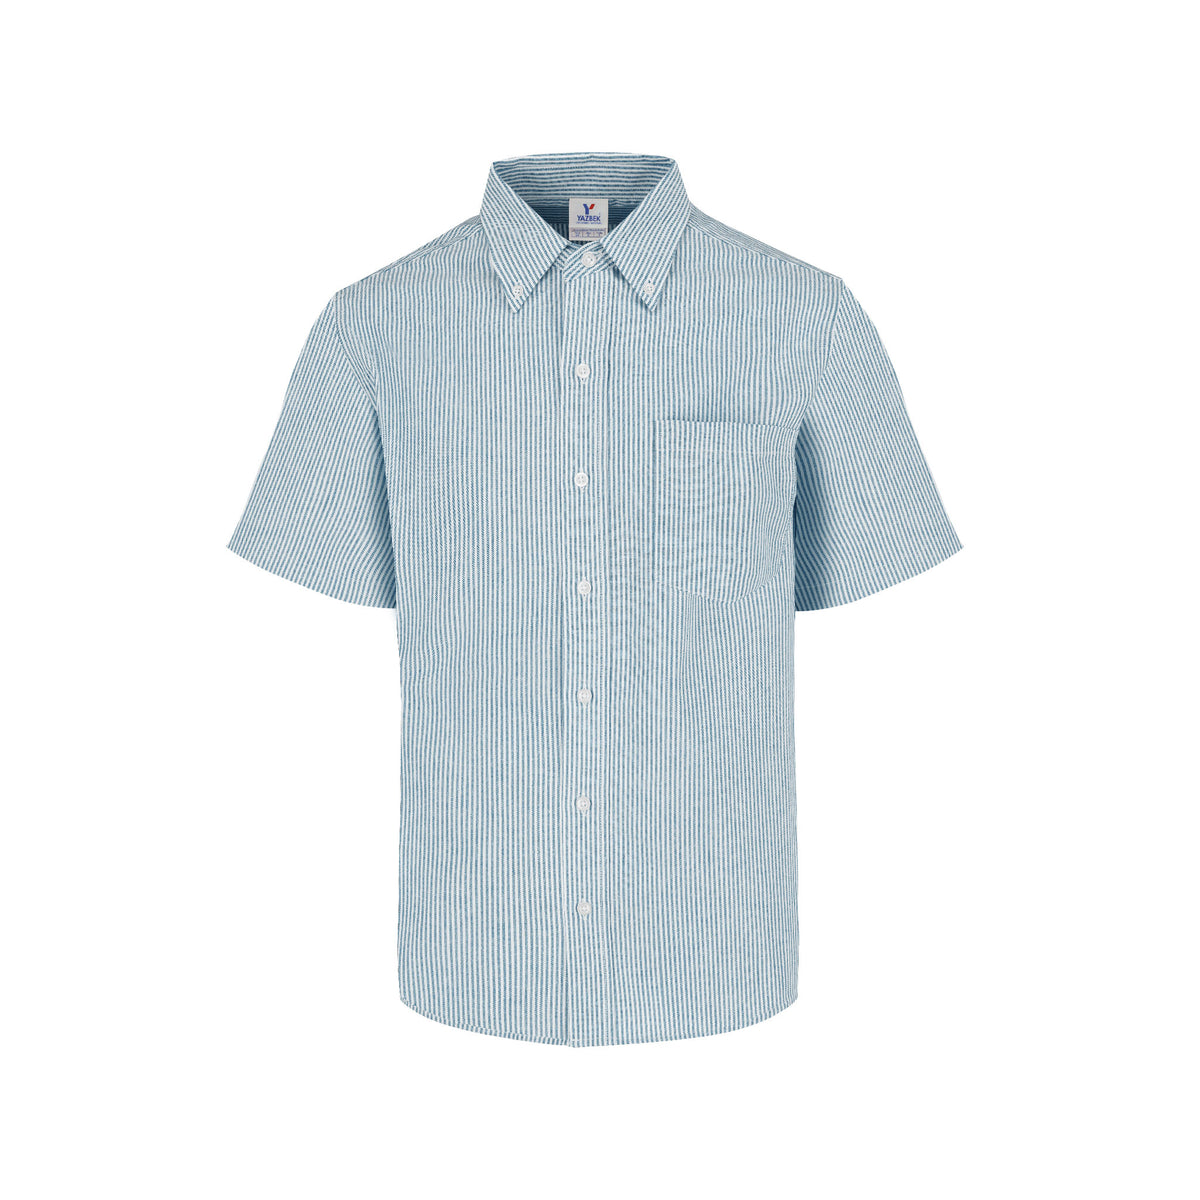 Men’s Short Sleeve Oxford Stripes Shirt (Light Blue & White Stripes ...